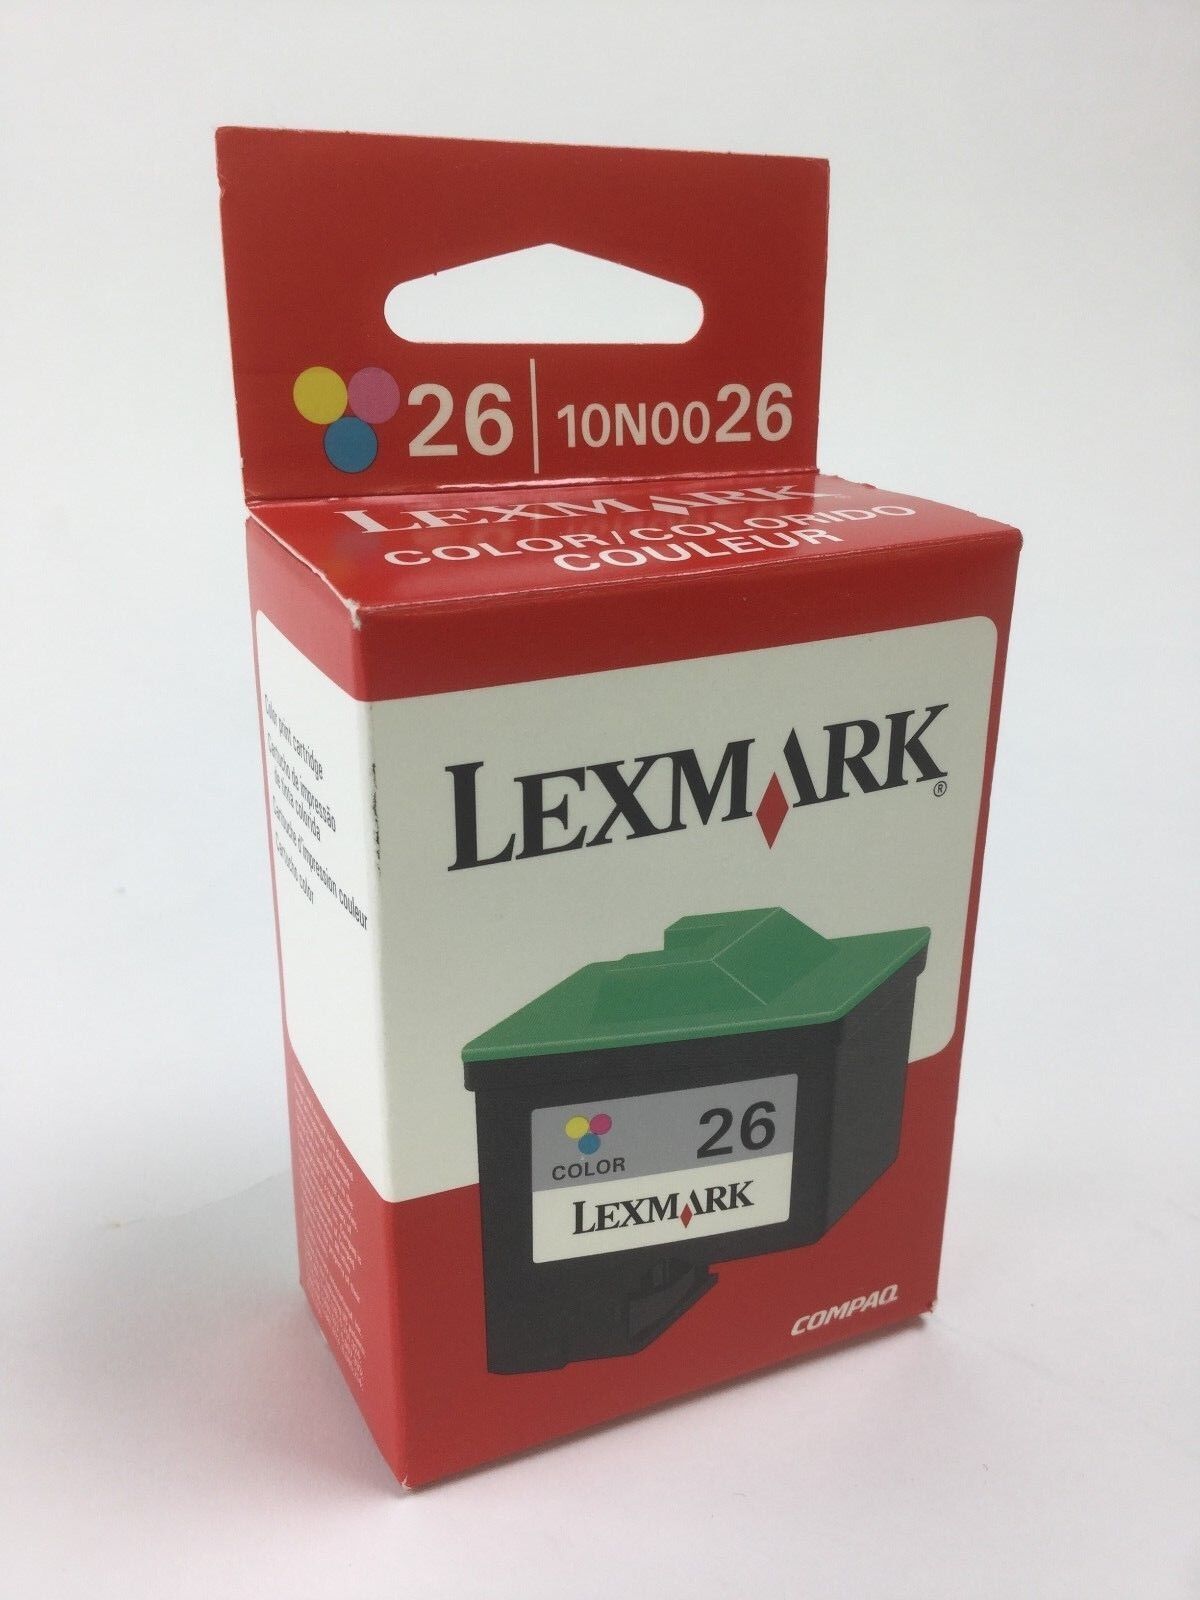 Lexmark 26 Tri-Color Ink Cartridge 10N0026 Genuine New Factory Sealed